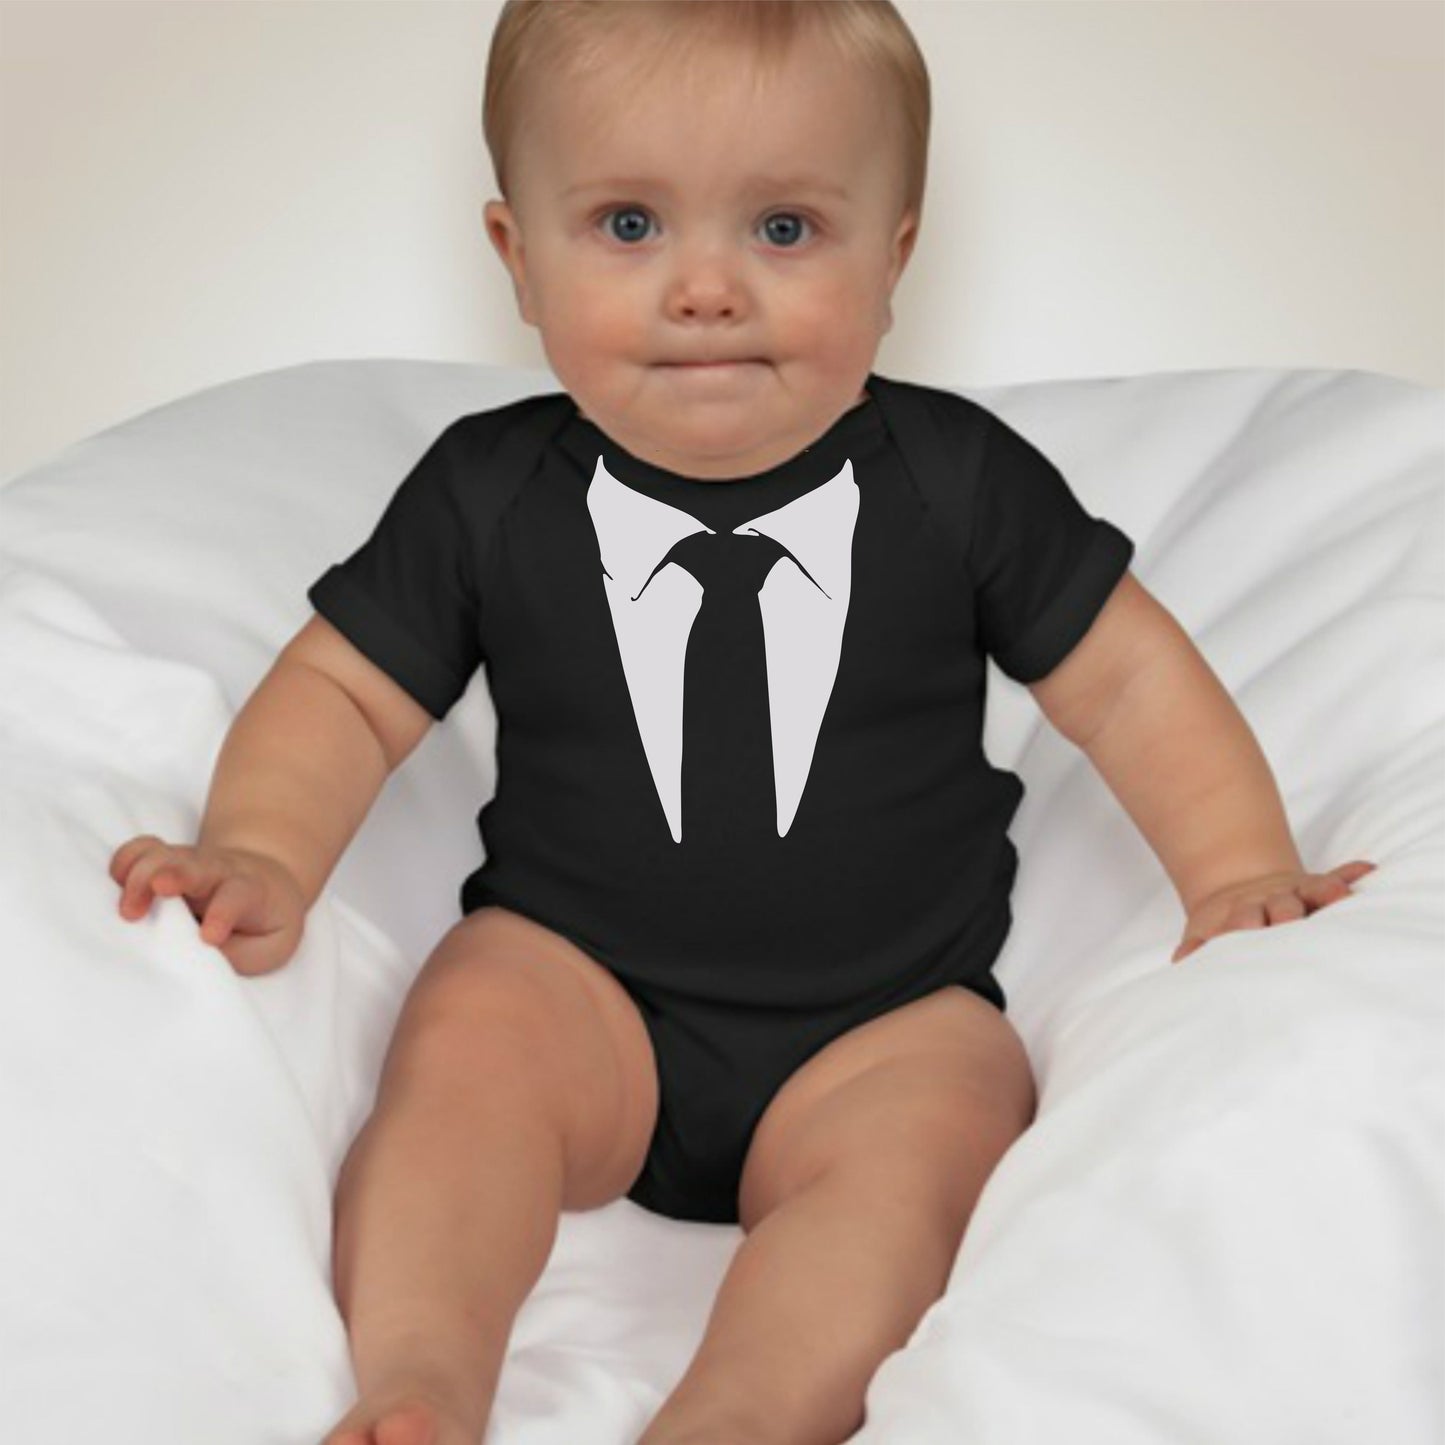 Baby Tuxedo Onesies - Baby Boss (Black)